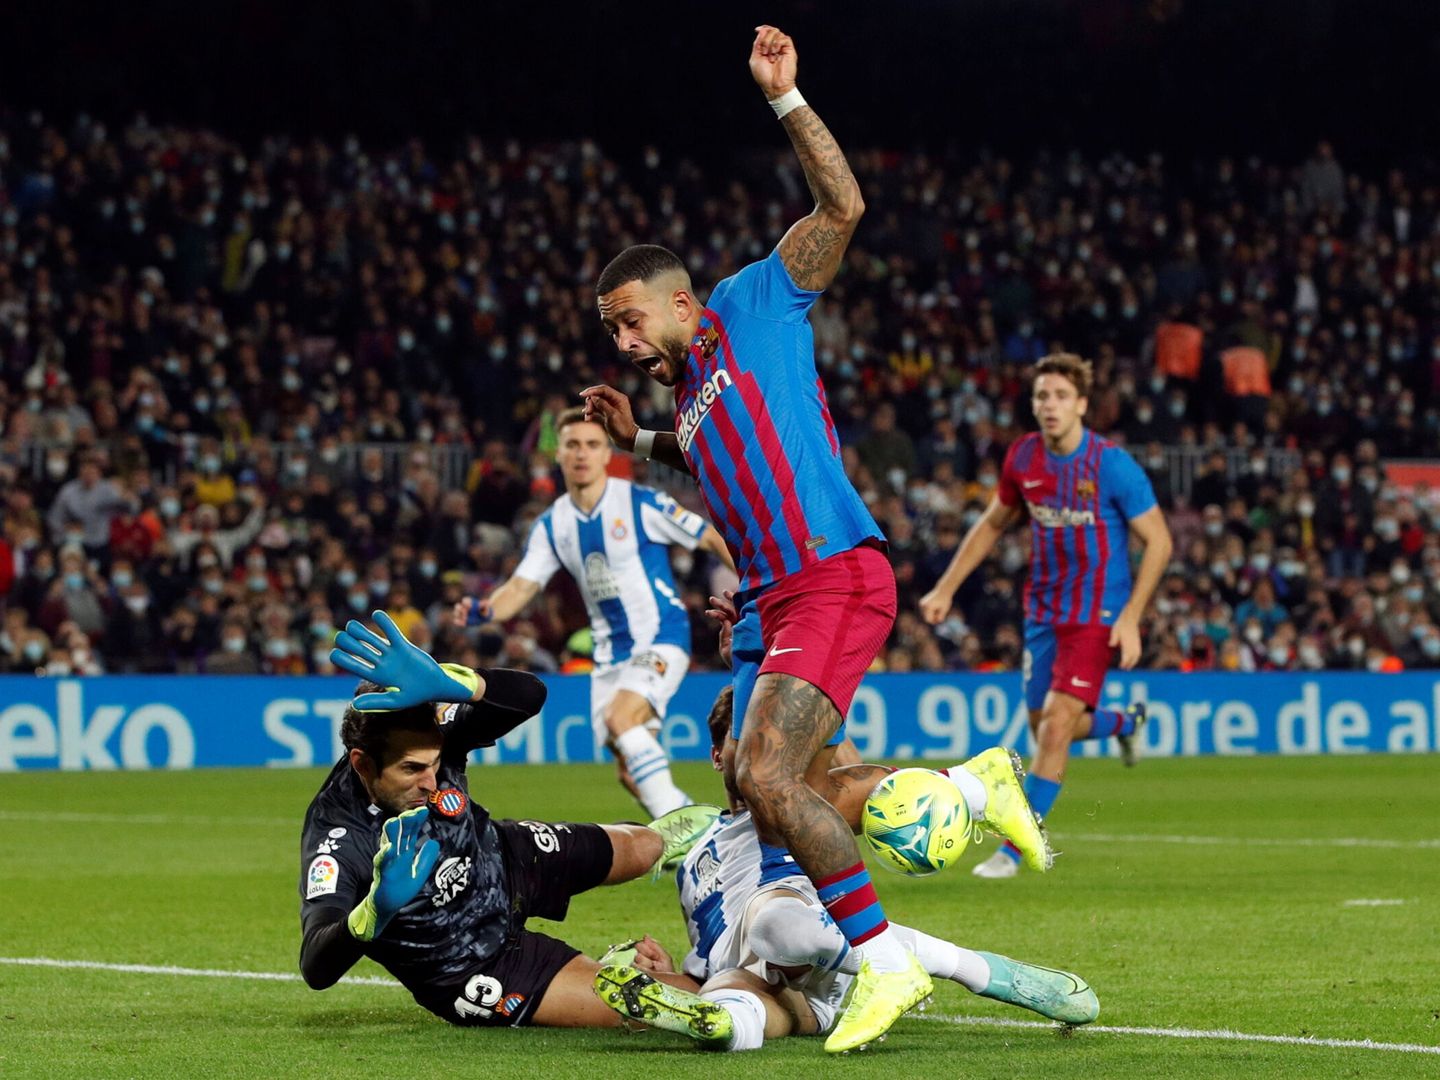 Memphis, en la jugada del penalti pitado a favor del Barcelona. (Reuters/Albert Gea)